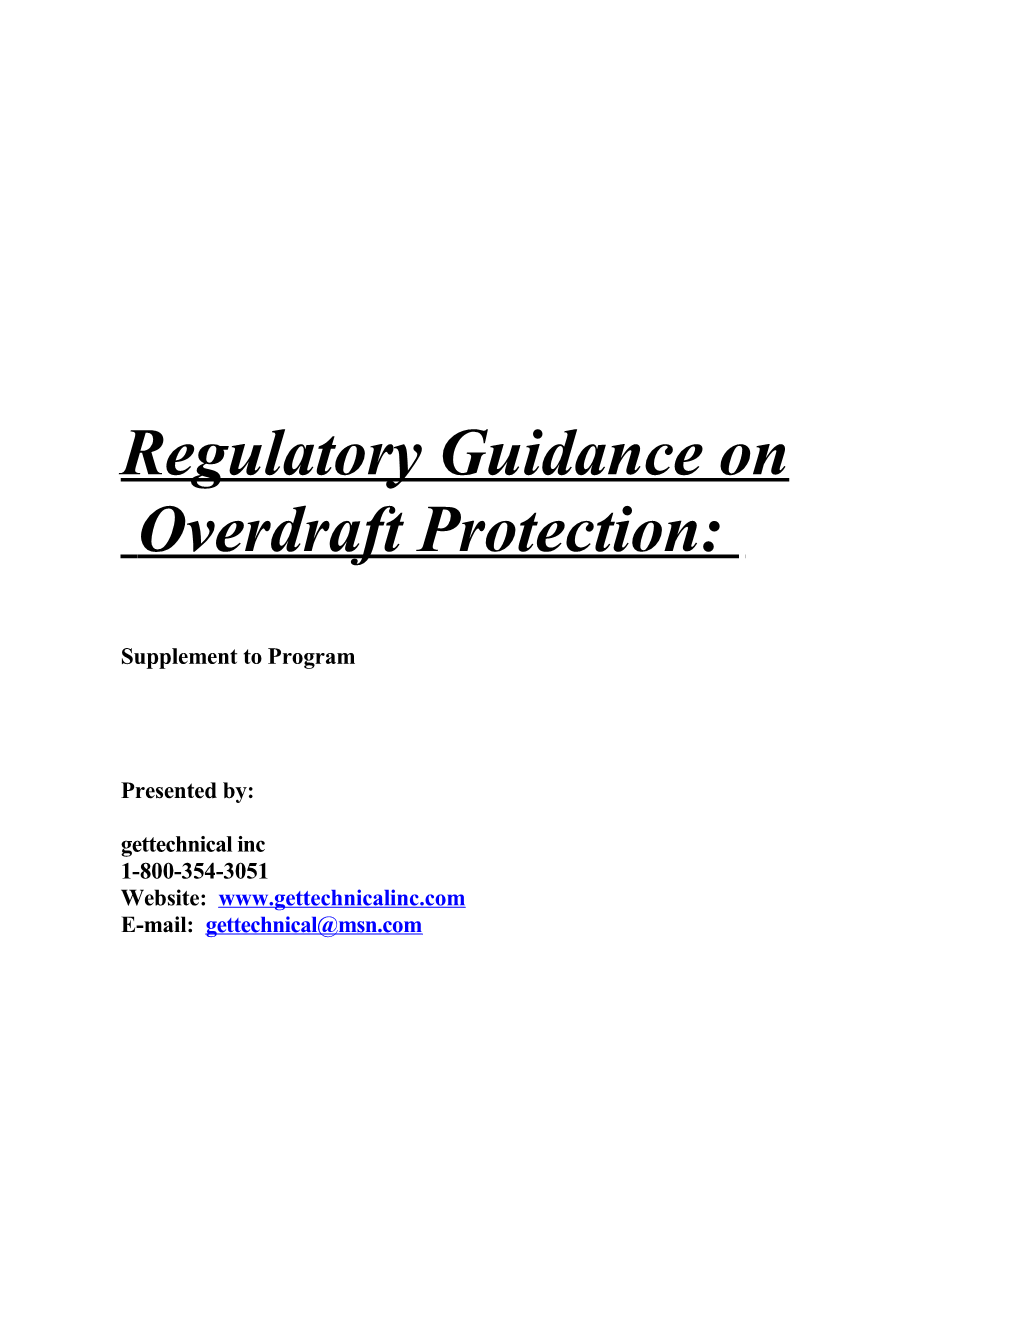 Regulatory Guidance On